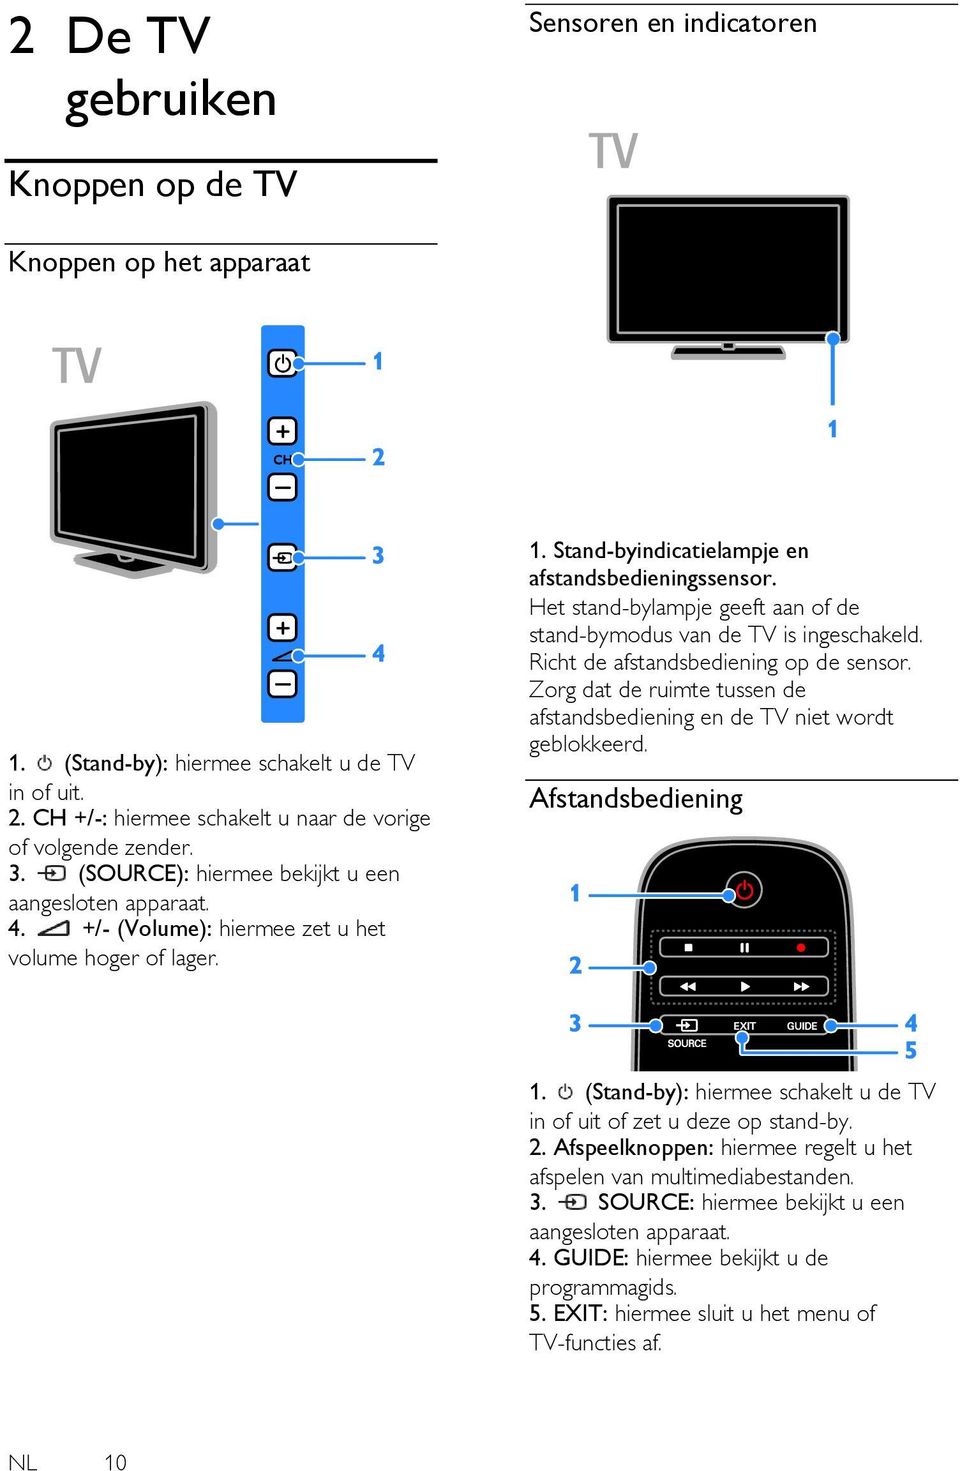 Het stand-bylampje geeft aan of de stand-bymodus van de TV is ingeschakeld. Richt de afstandsbediening op de sensor. Zorg dat de ruimte tussen de afstandsbediening en de TV niet wordt geblokkeerd.